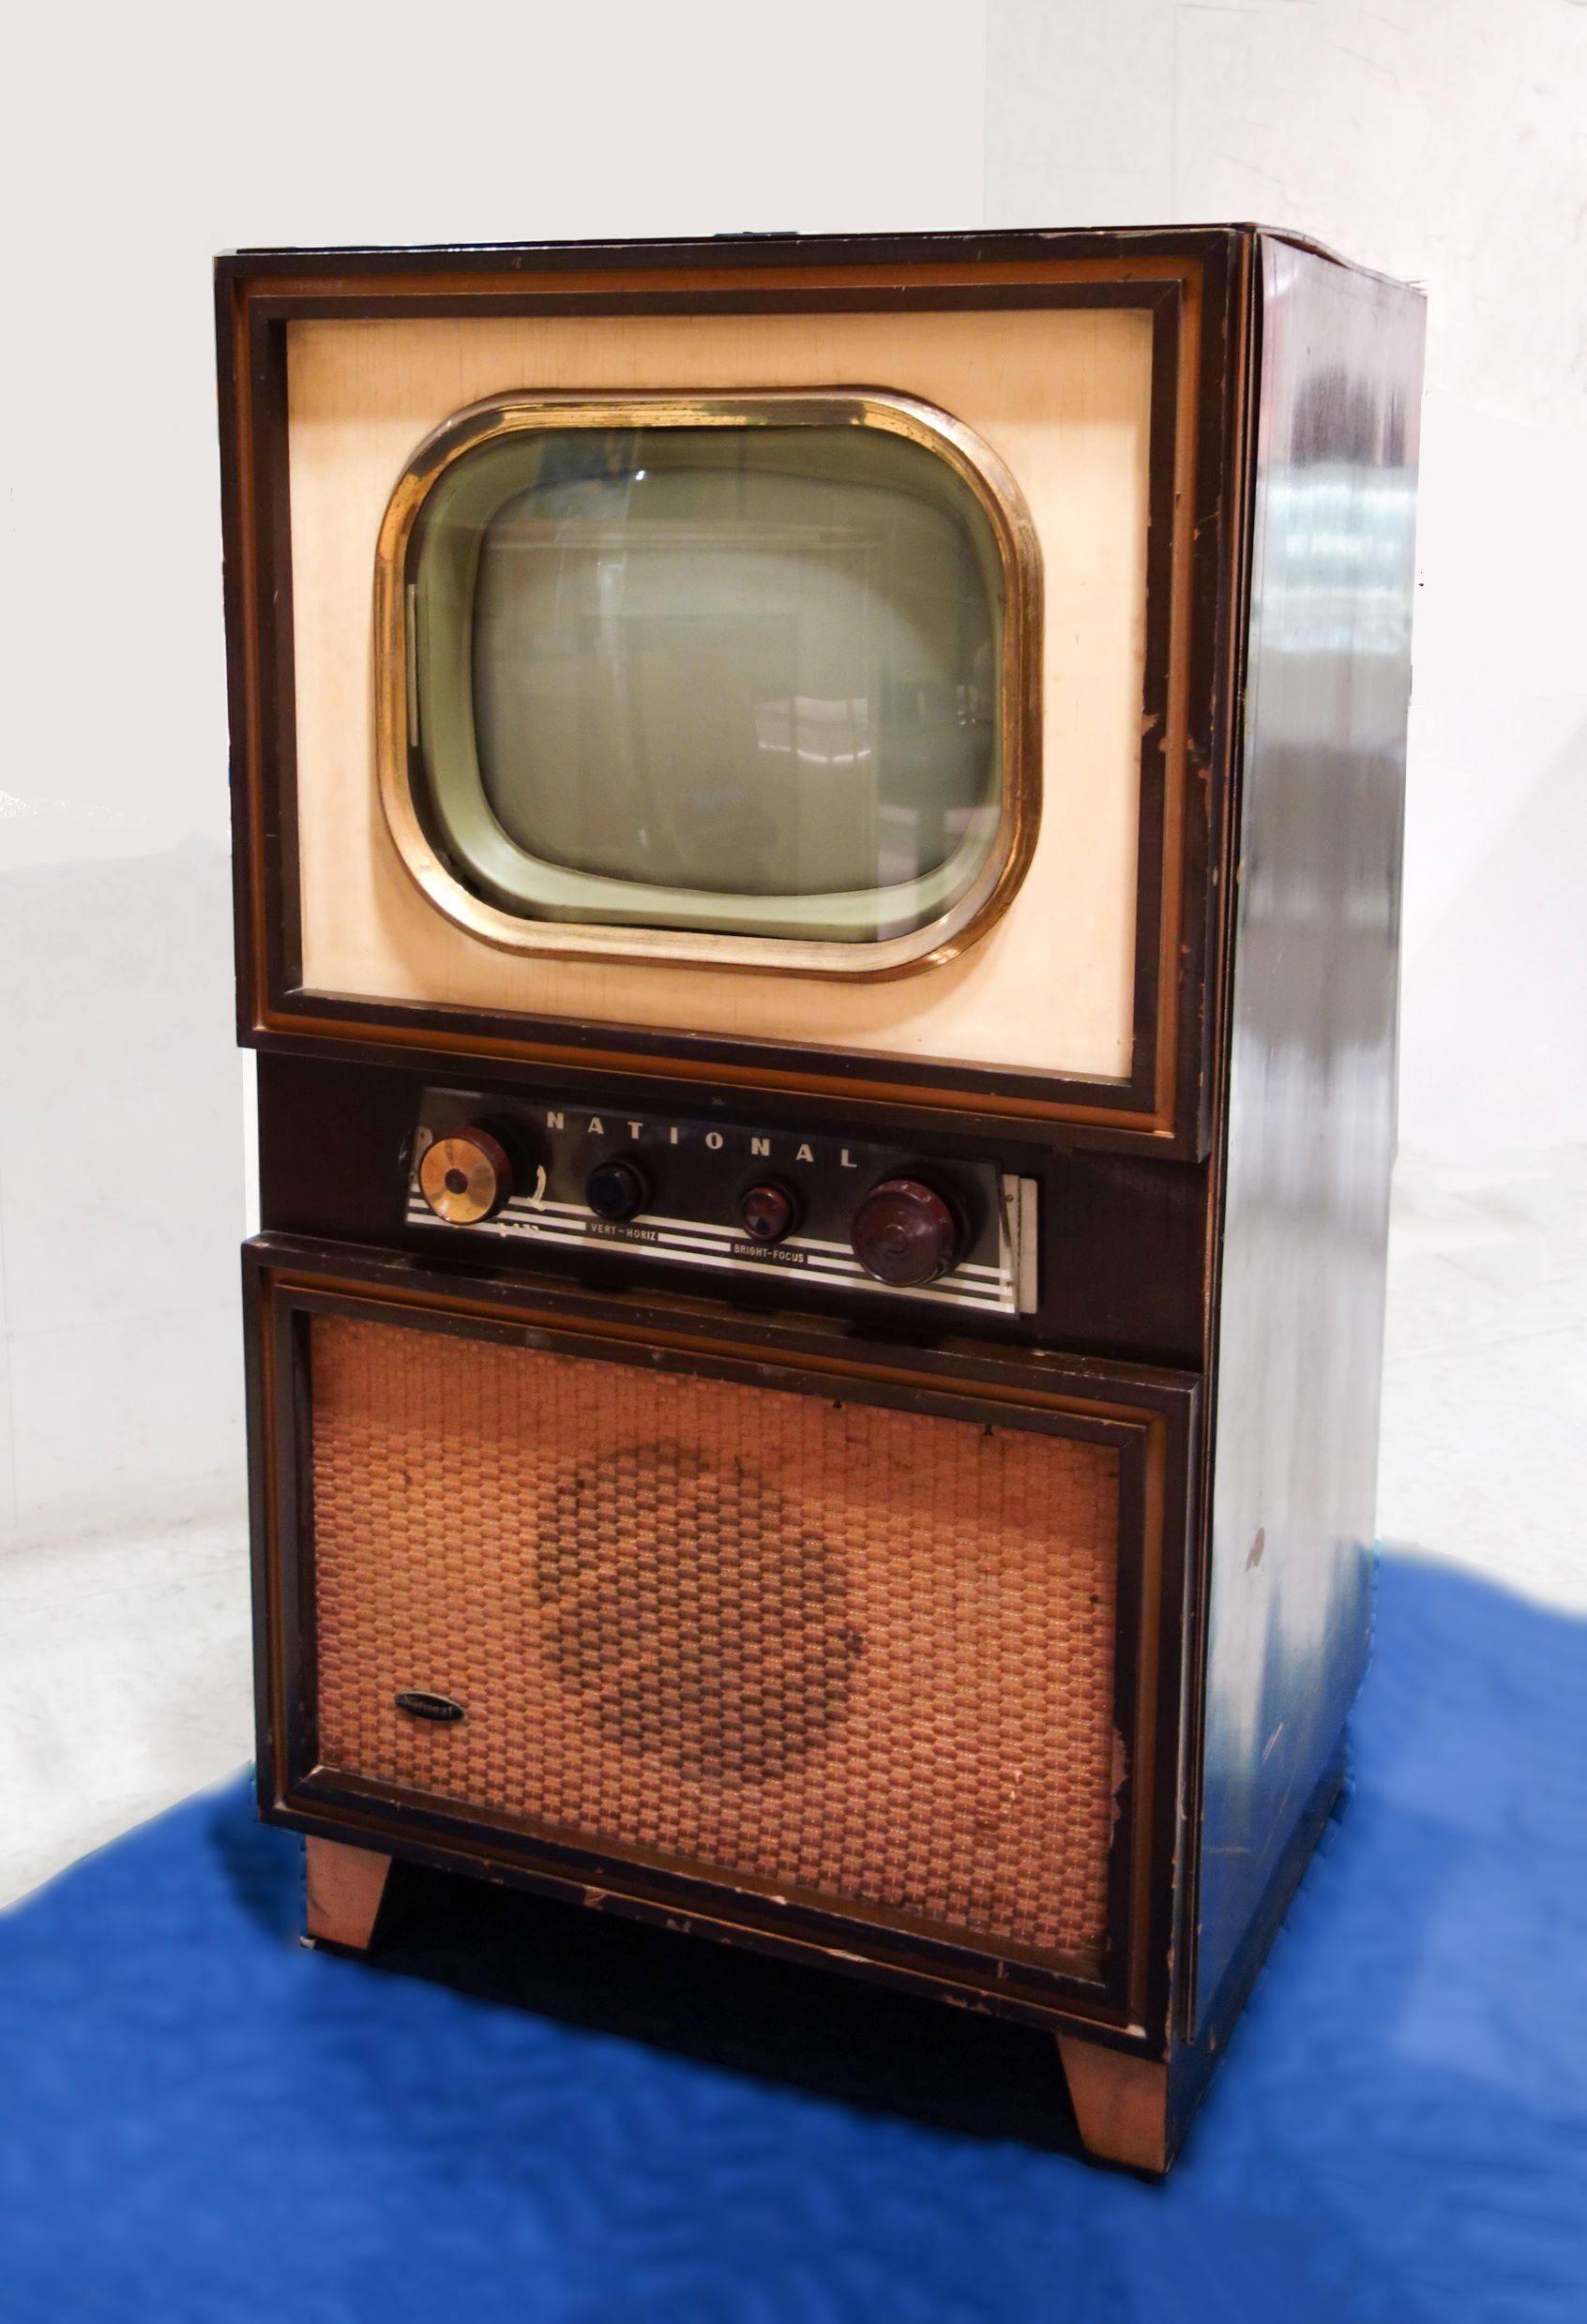 理工電子資料館:テレビ放送開始時期に発売されたブラウン管テレビ